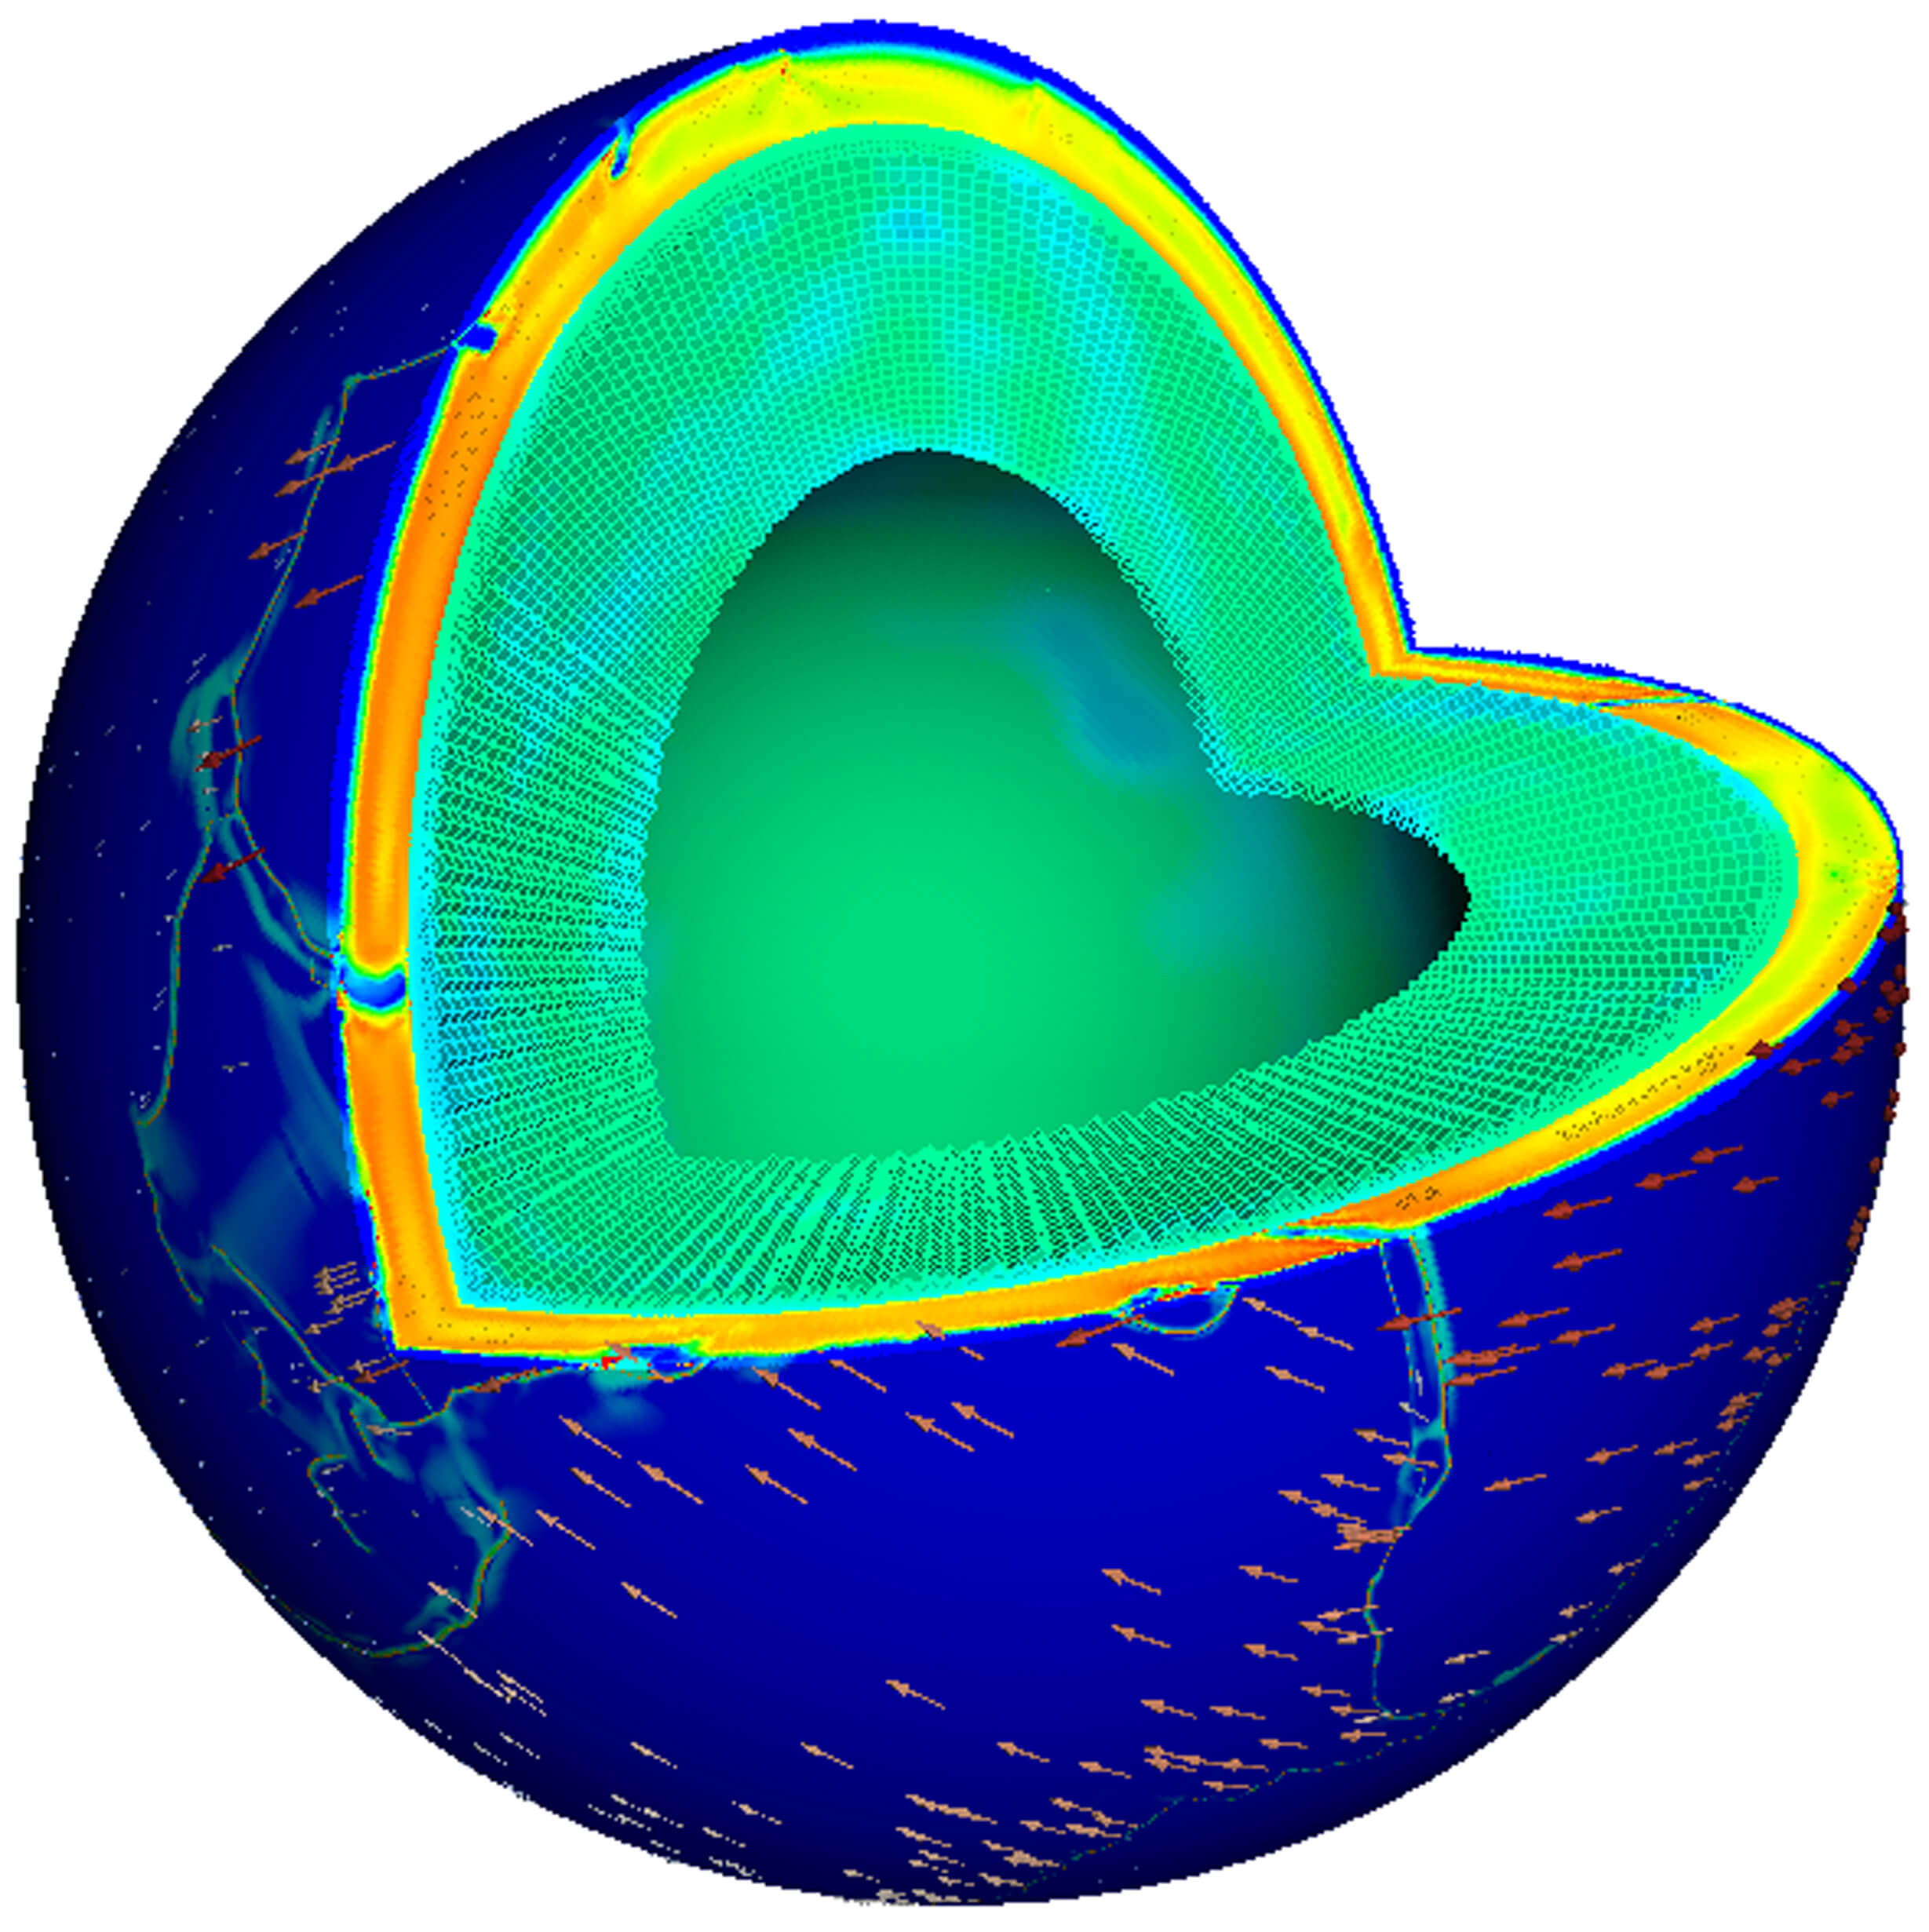 הדמיה של מבנהו הפנימי של כדור הארץ במסגרת סימולציה של תנועת הלוחות הטקטוניים. באדיבות יבמ